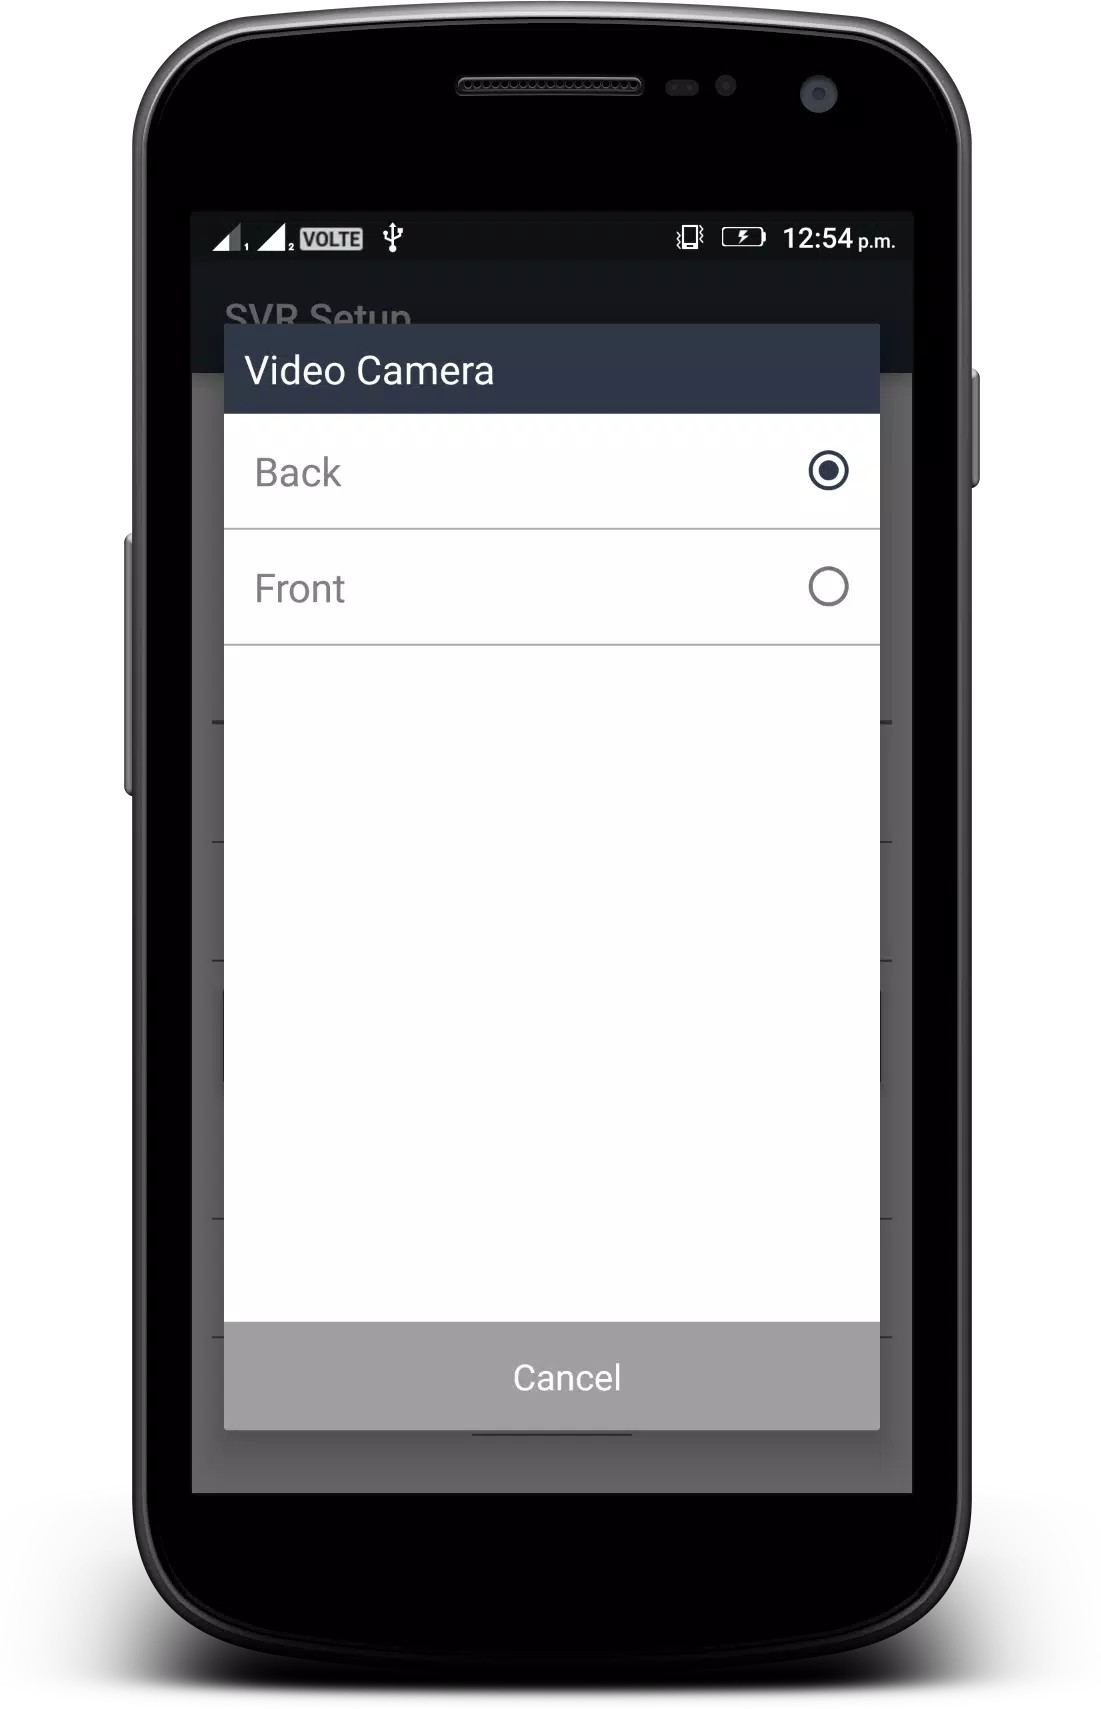 Chụp ảnh và quay video sẽ dễ dàng hơn bao giờ hết với ứng dụng Background Video Recorder for Android! Bạn không cần phải sử dụng nhiều thao tác, đơn giản chỉ cần mở ứng dụng và bắt đầu quay video ngay thôi.